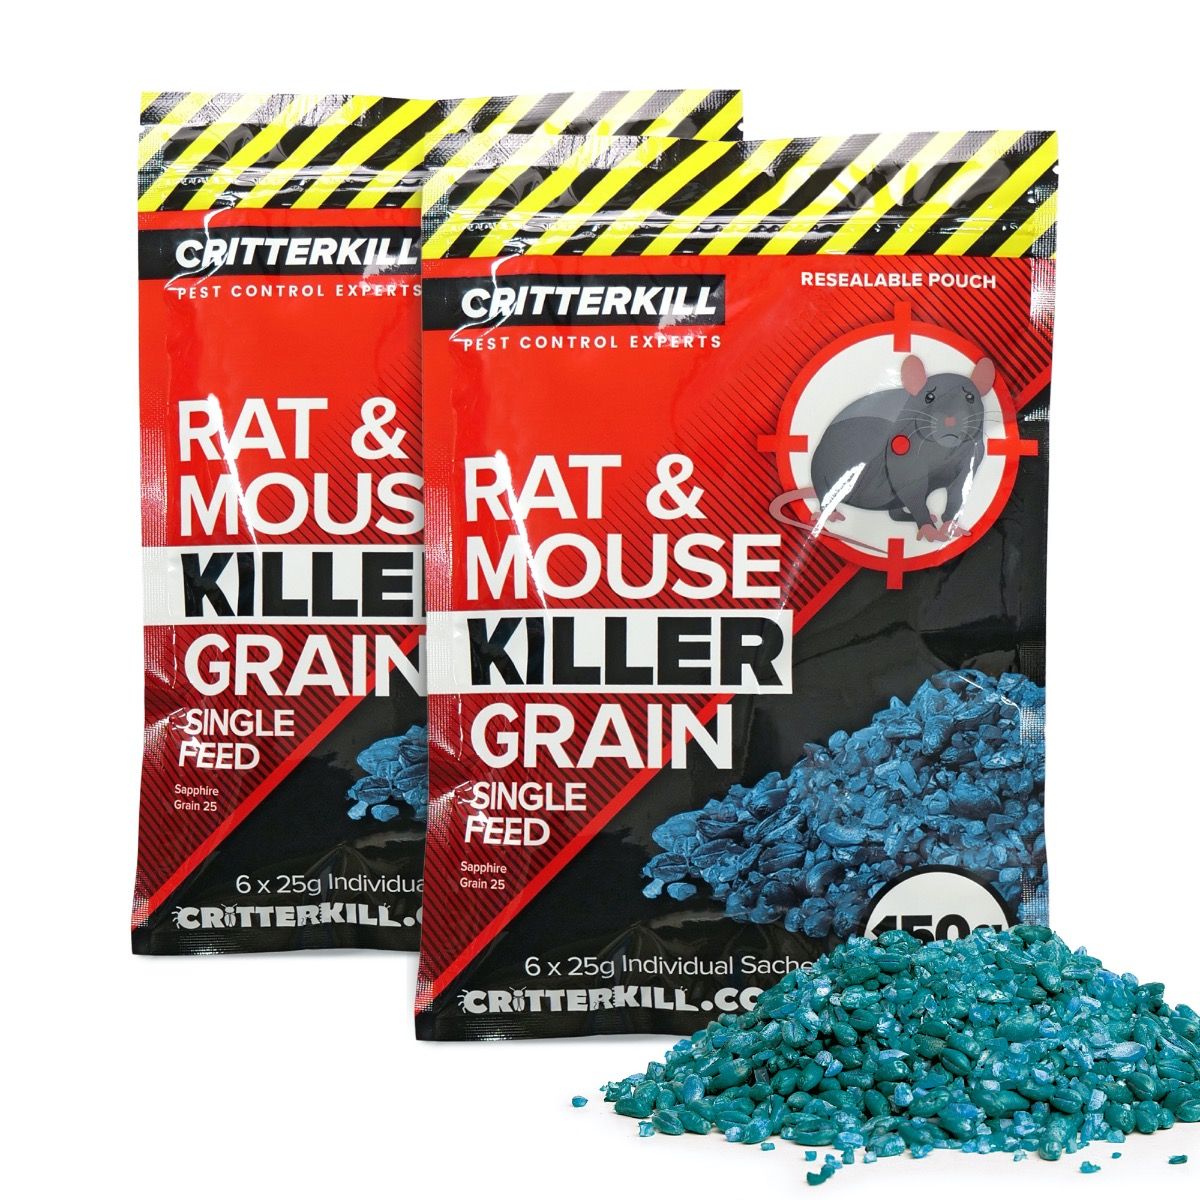 CritterKill Rat & Mouse Killer Poison Grain Bait